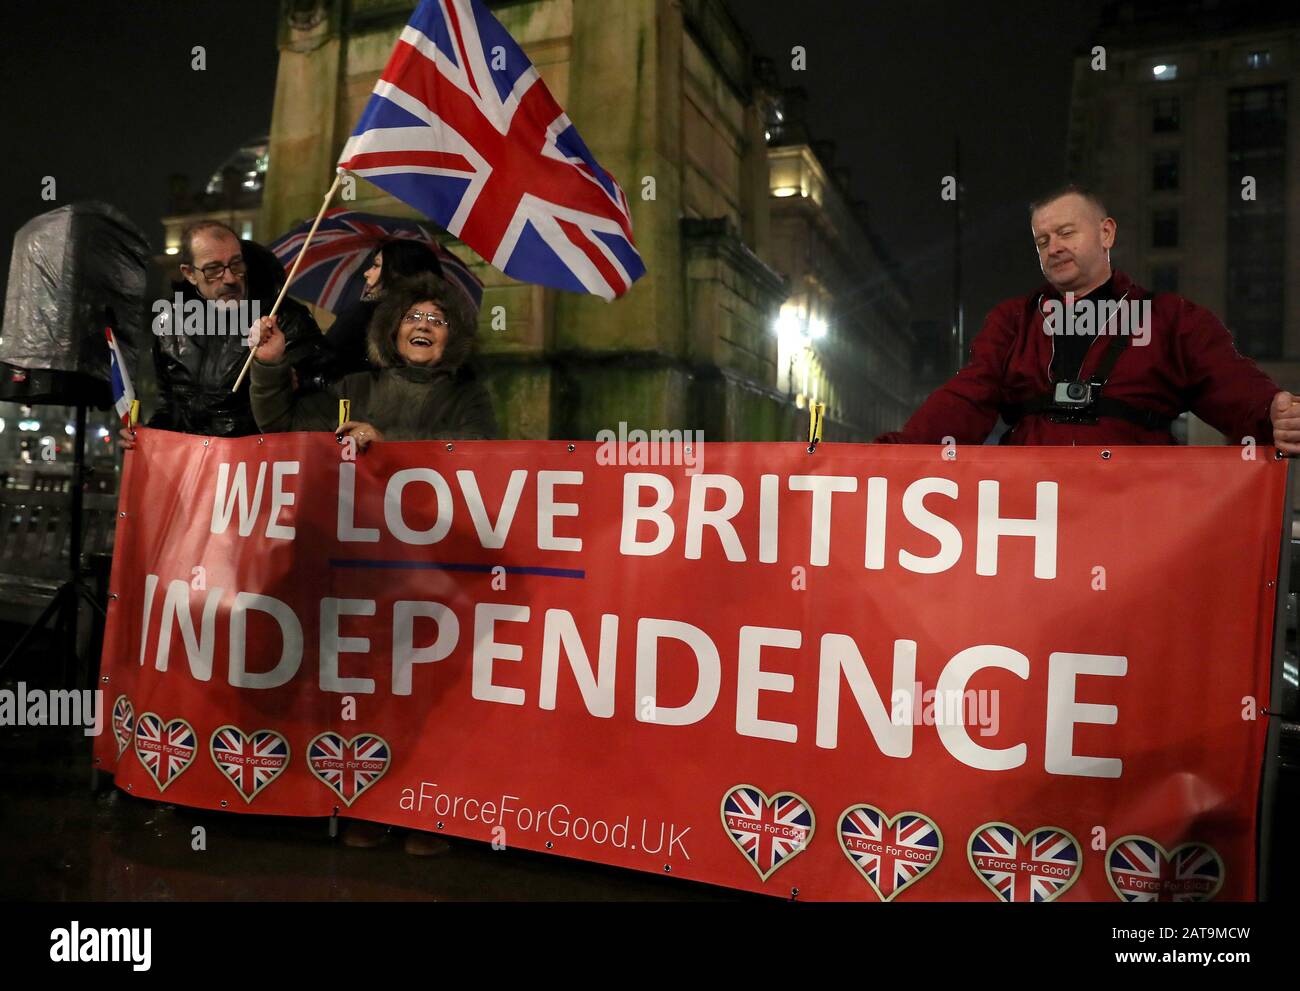 Pro-Brexit-Anhänger versammeln sich auf dem George Square in Glasgow, während sich Großbritannien darauf vorbereitet, die Europäische Union zu verlassen, und beenden 47 Jahre enge und manchmal unbequeme Beziehungen nach Brüssel. PA Foto. Bilddatum: Freitag, 31. Januar 2020. Siehe PA Story POLITICS Brexit. Fotogutschrift sollte lauten: Andrew Milligan/PA Wire Stockfoto